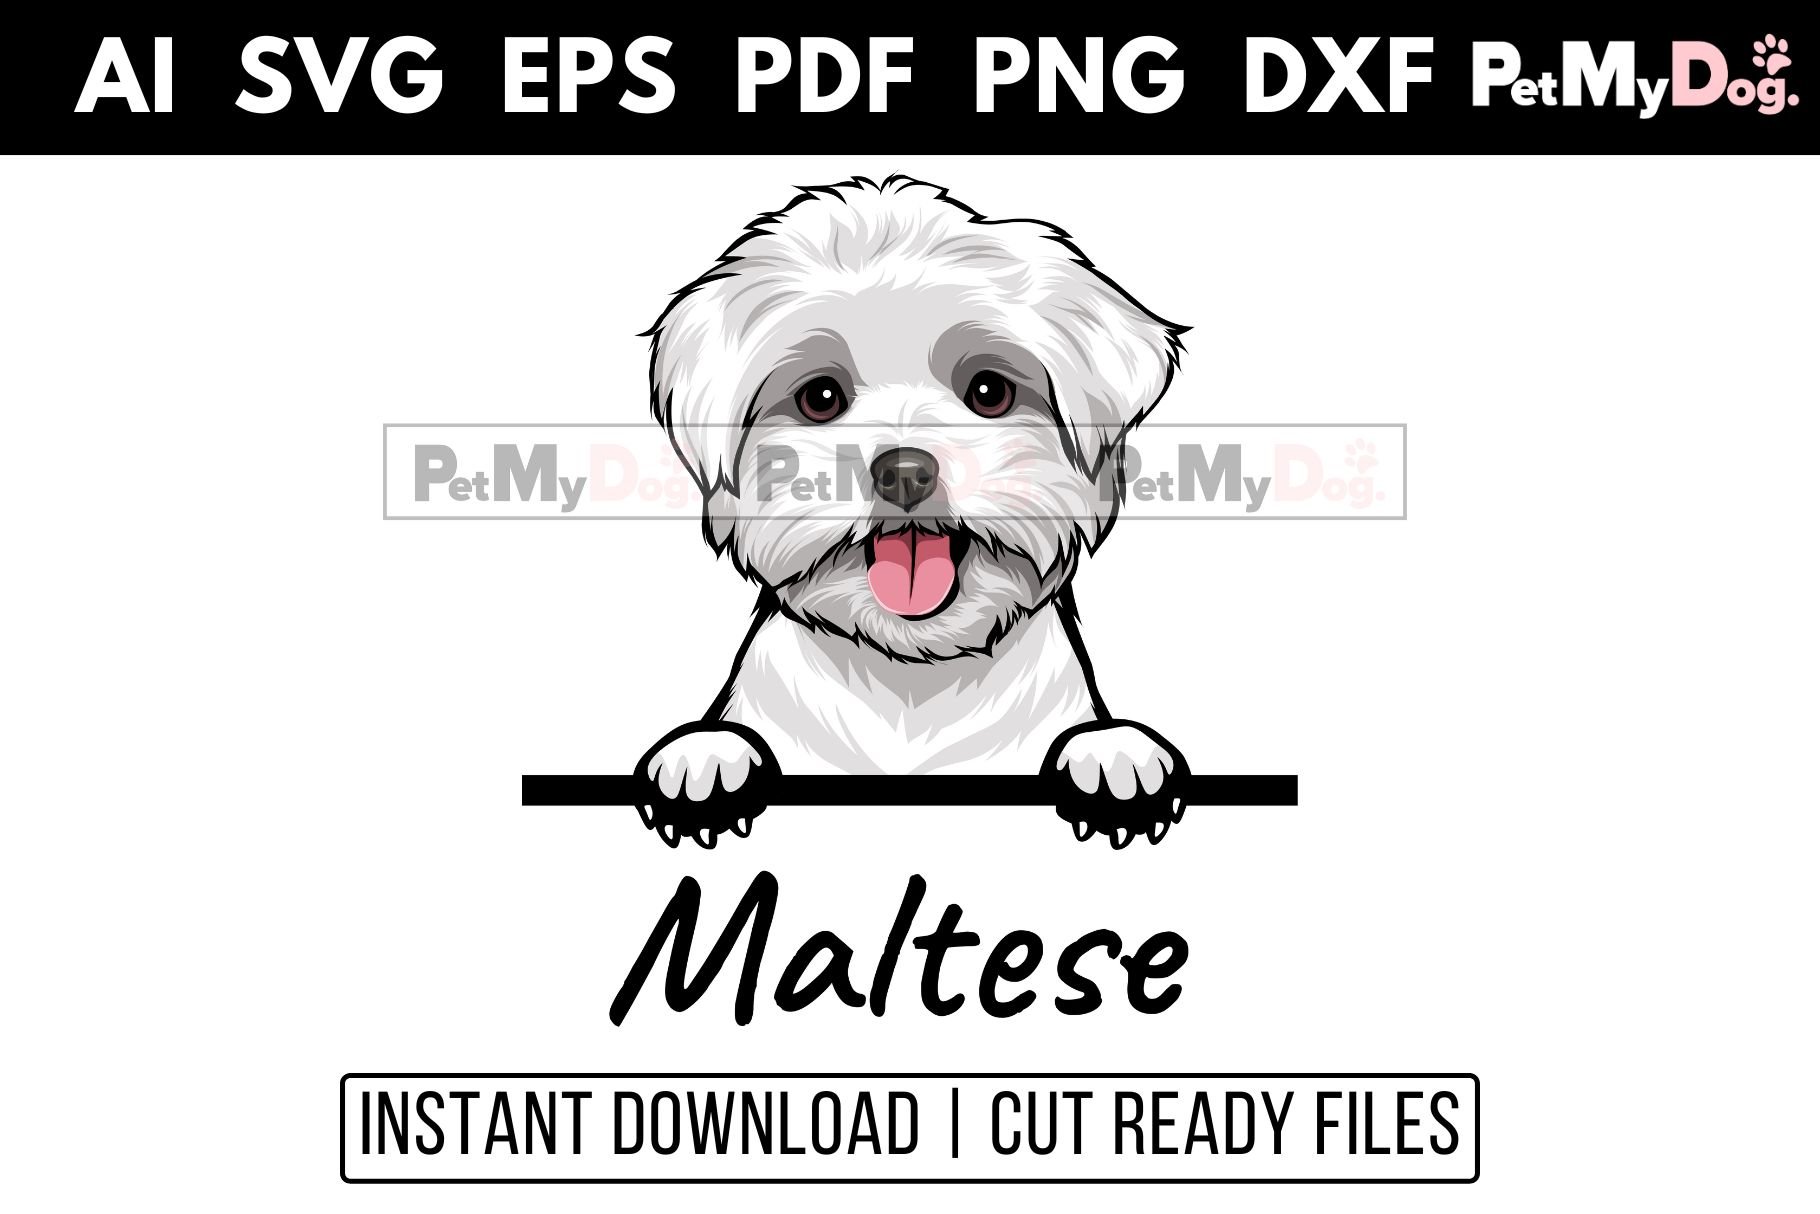 Maltese - Peeking Dog cover image.